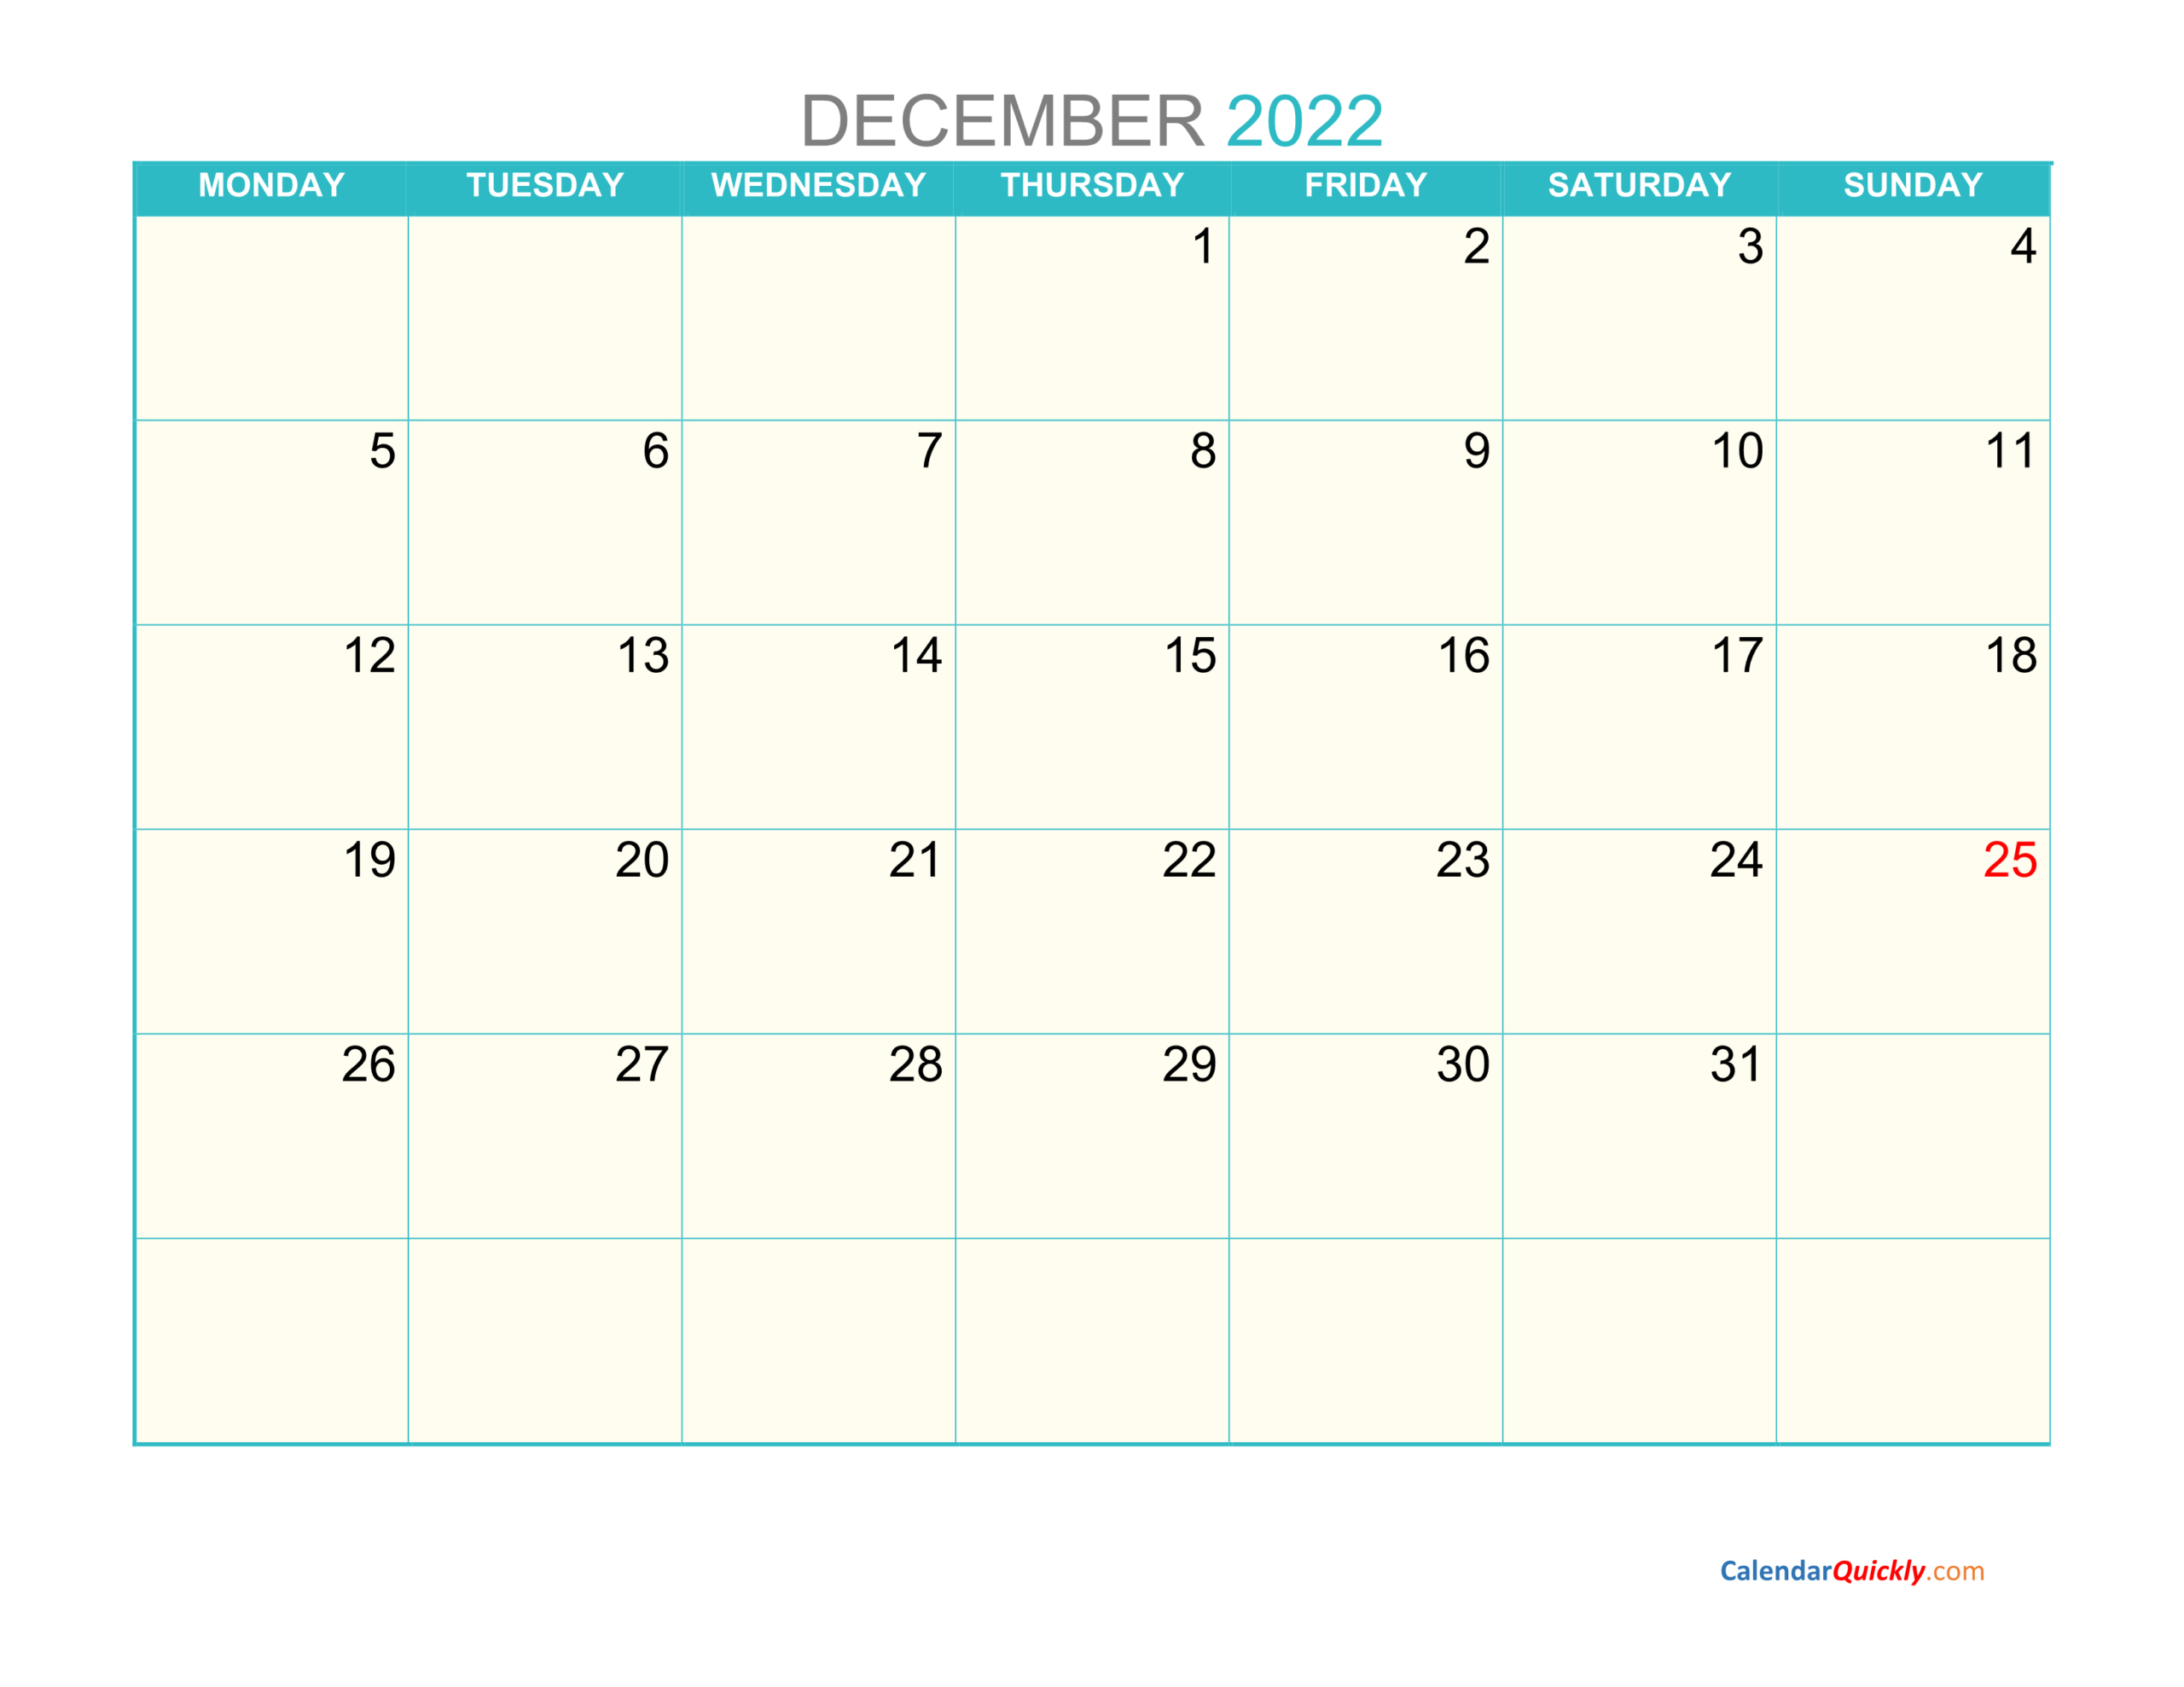 December Monday 2022 Calendar Printable | Calendar Quickly  December Printable Calendar 2022